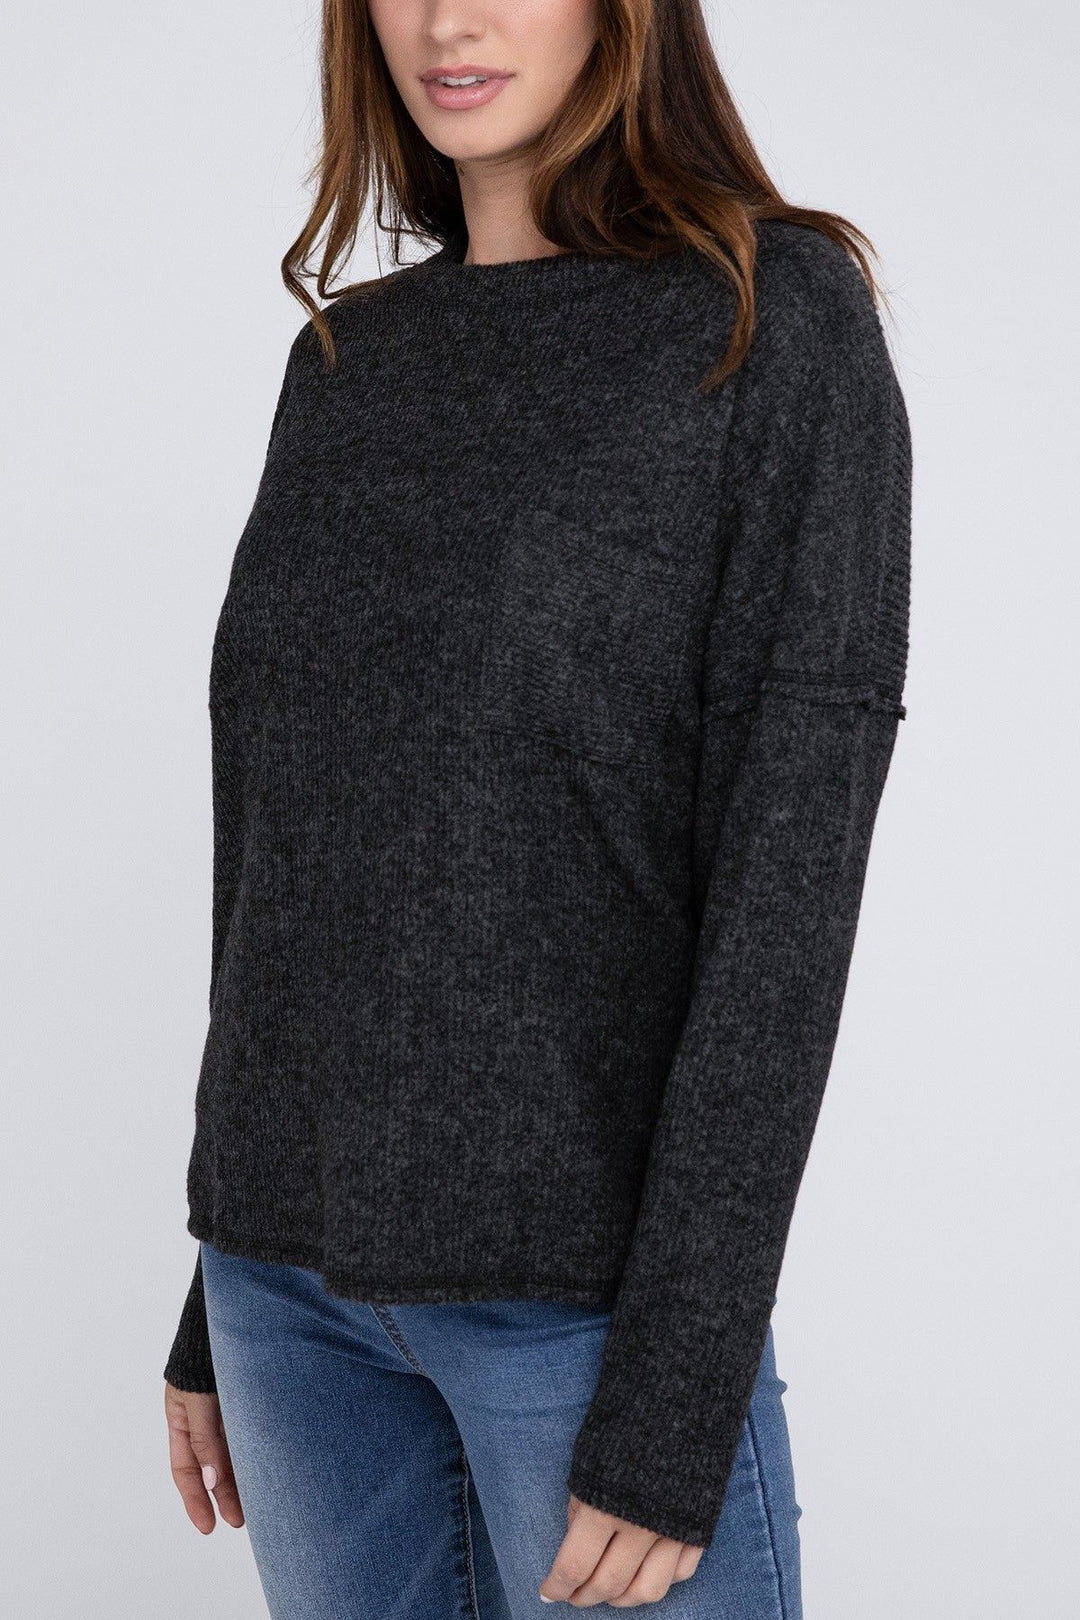 Zenana Ribbed Brushed Melange Hacci Sweater - Inspired Eye Boutique